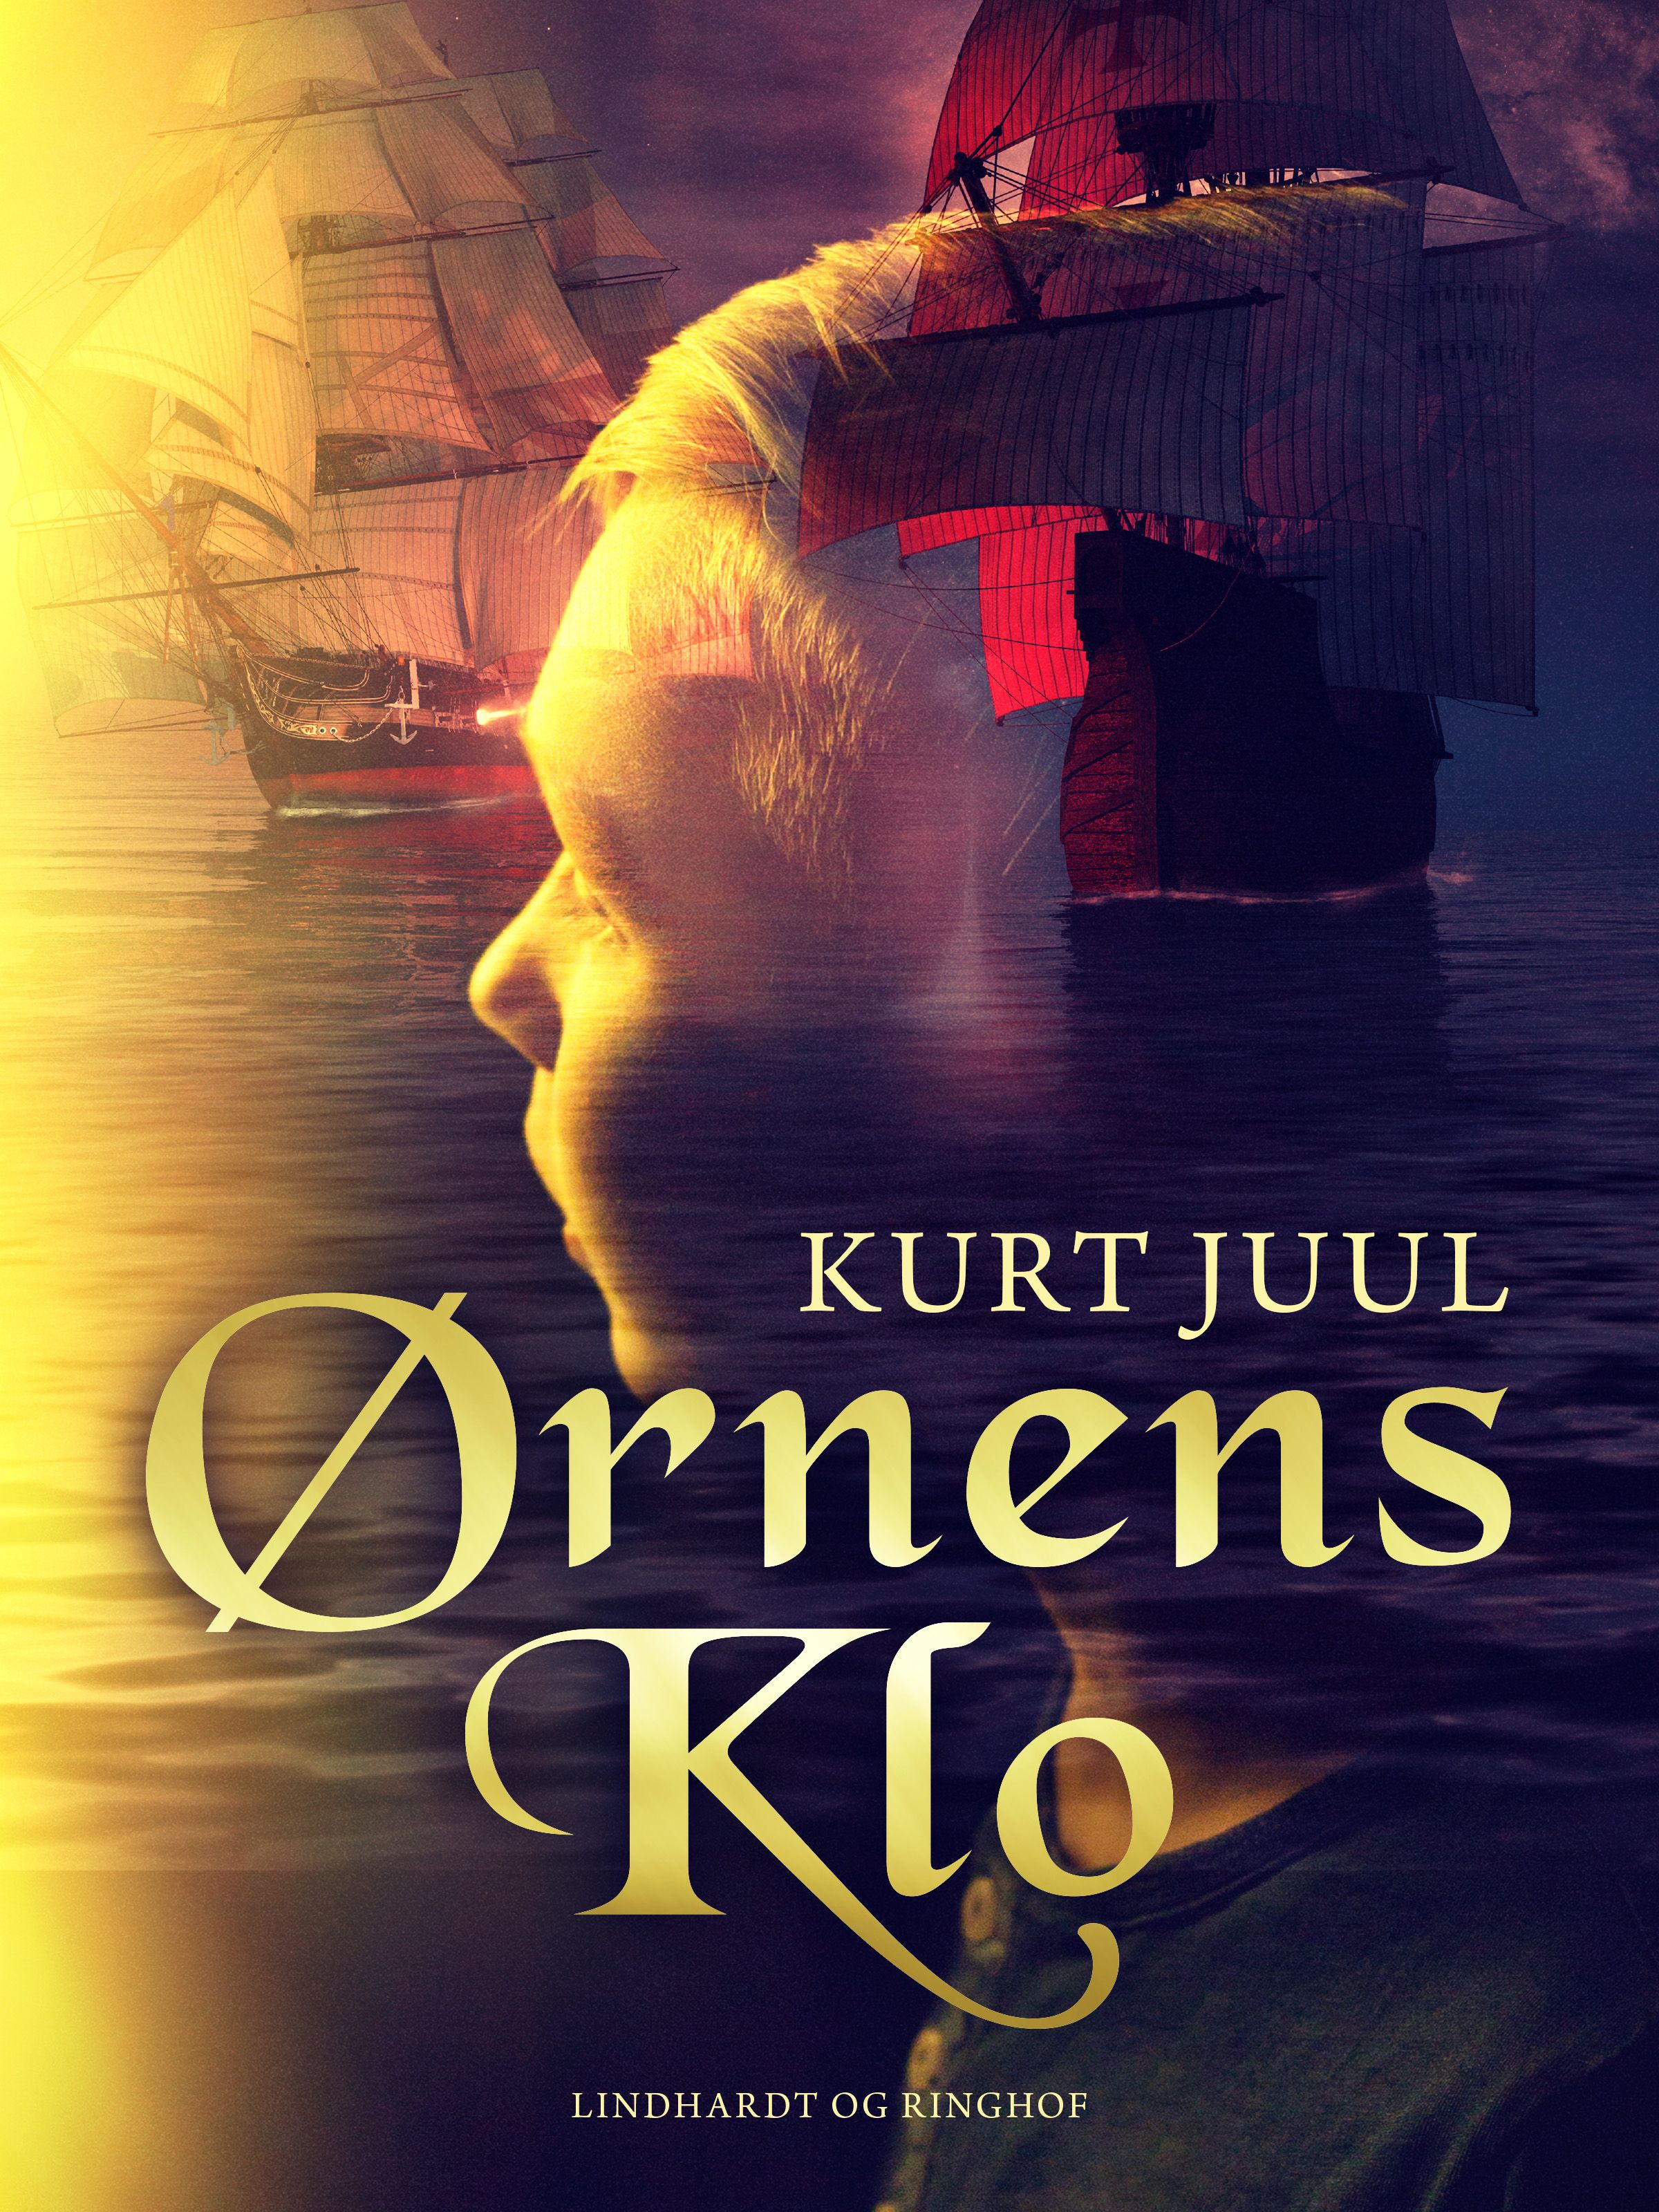 Ørnens klo, e-bok av Kurt Juul